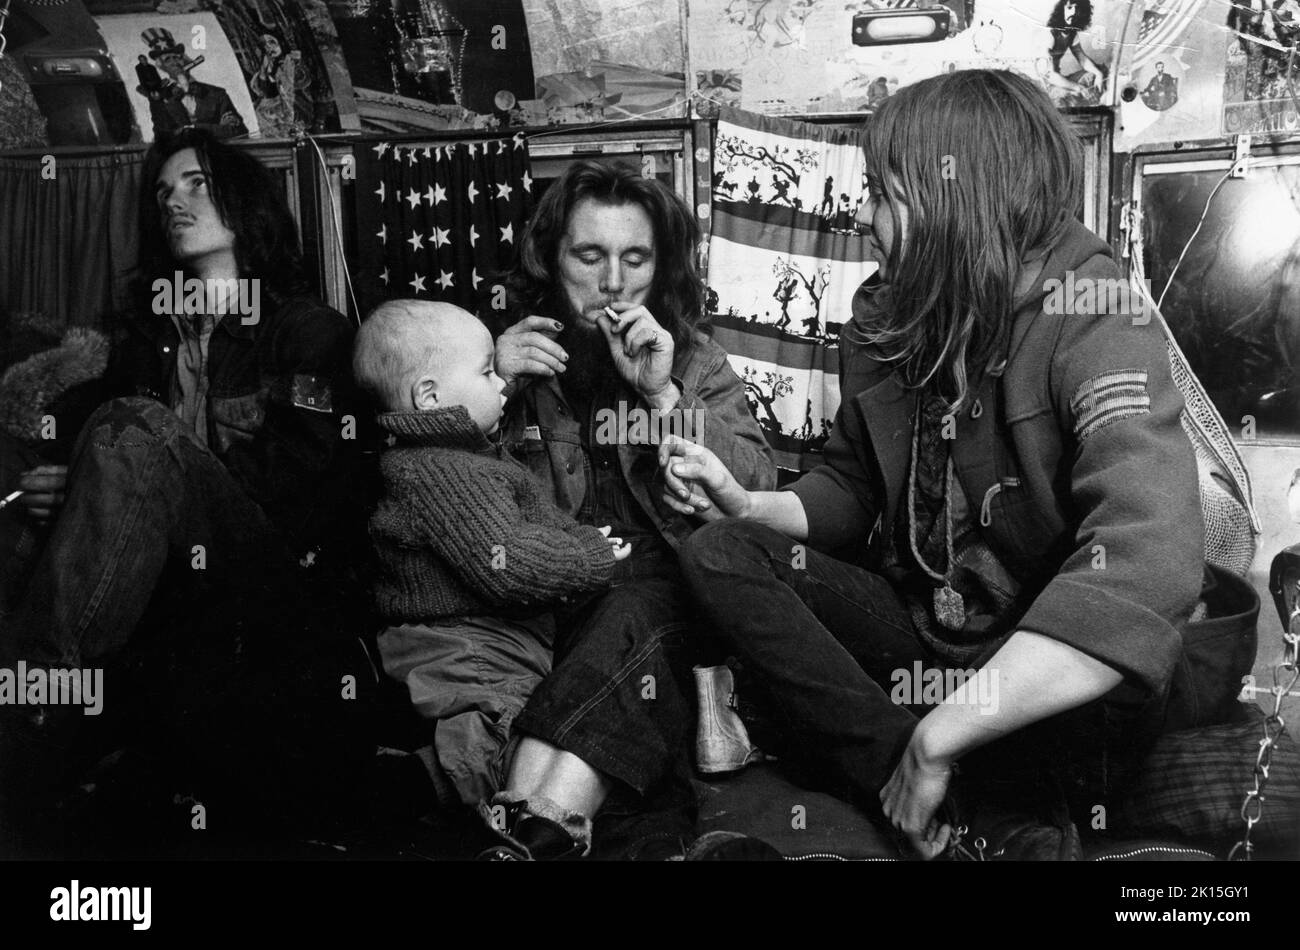 Famille de hippies vivant dans un pot de fumée de bus alors que leur enfant regarde en 1970.La ferme Hog, une commune hippie, a été associée au Festival de musique de Woodstock. Banque D'Images